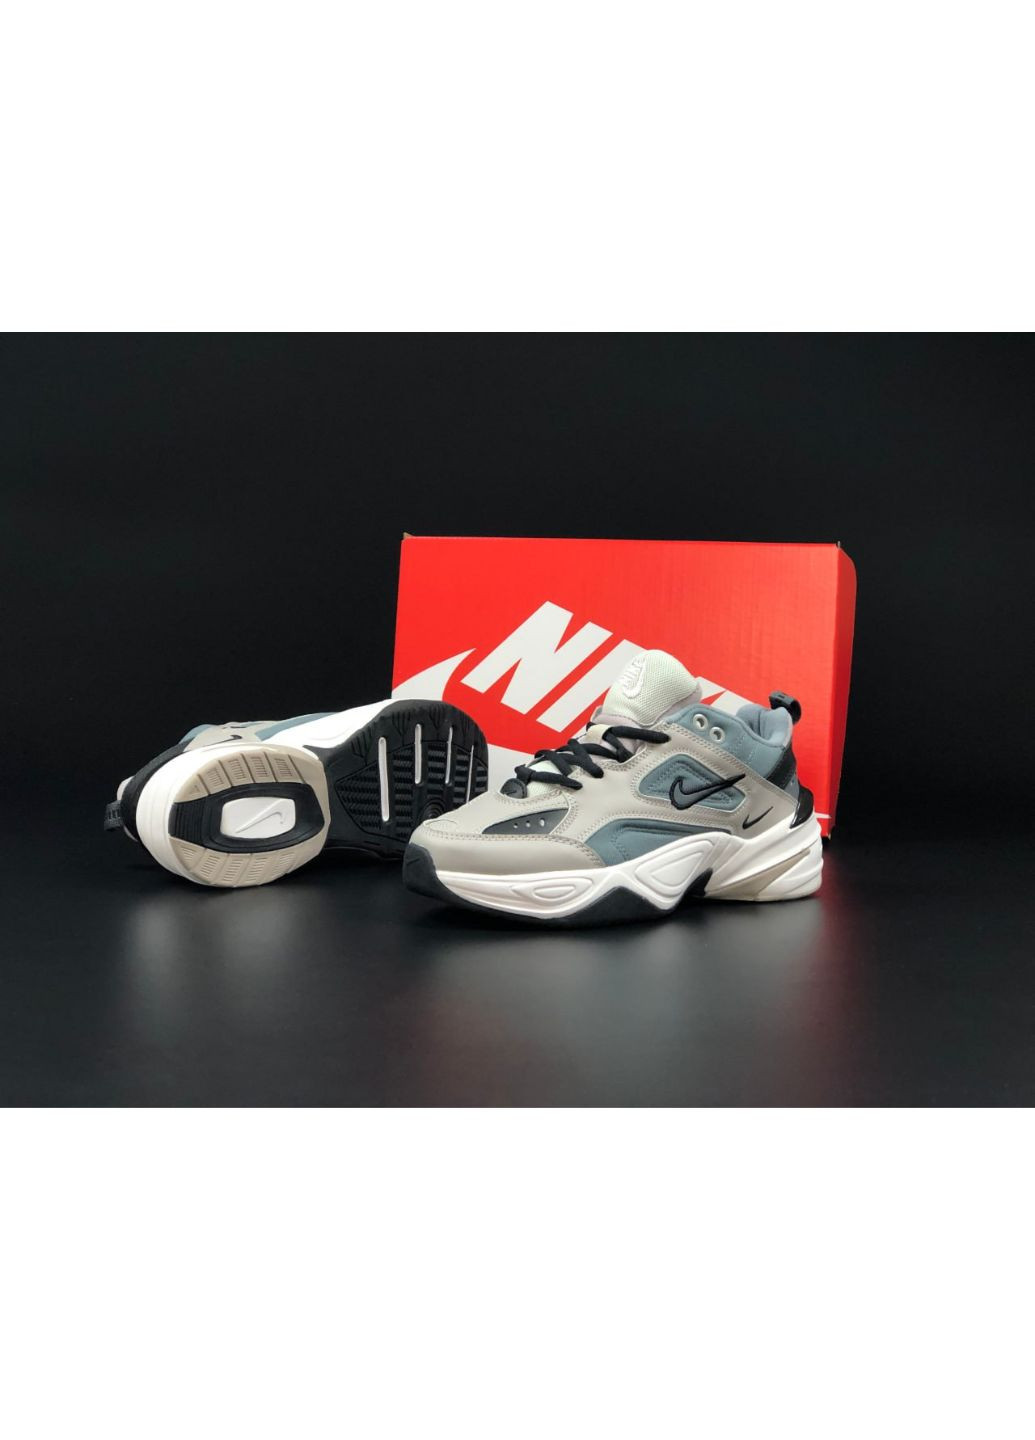 Серые демисезонные женские кроссовки серые «no name» Nike M2k Tekno